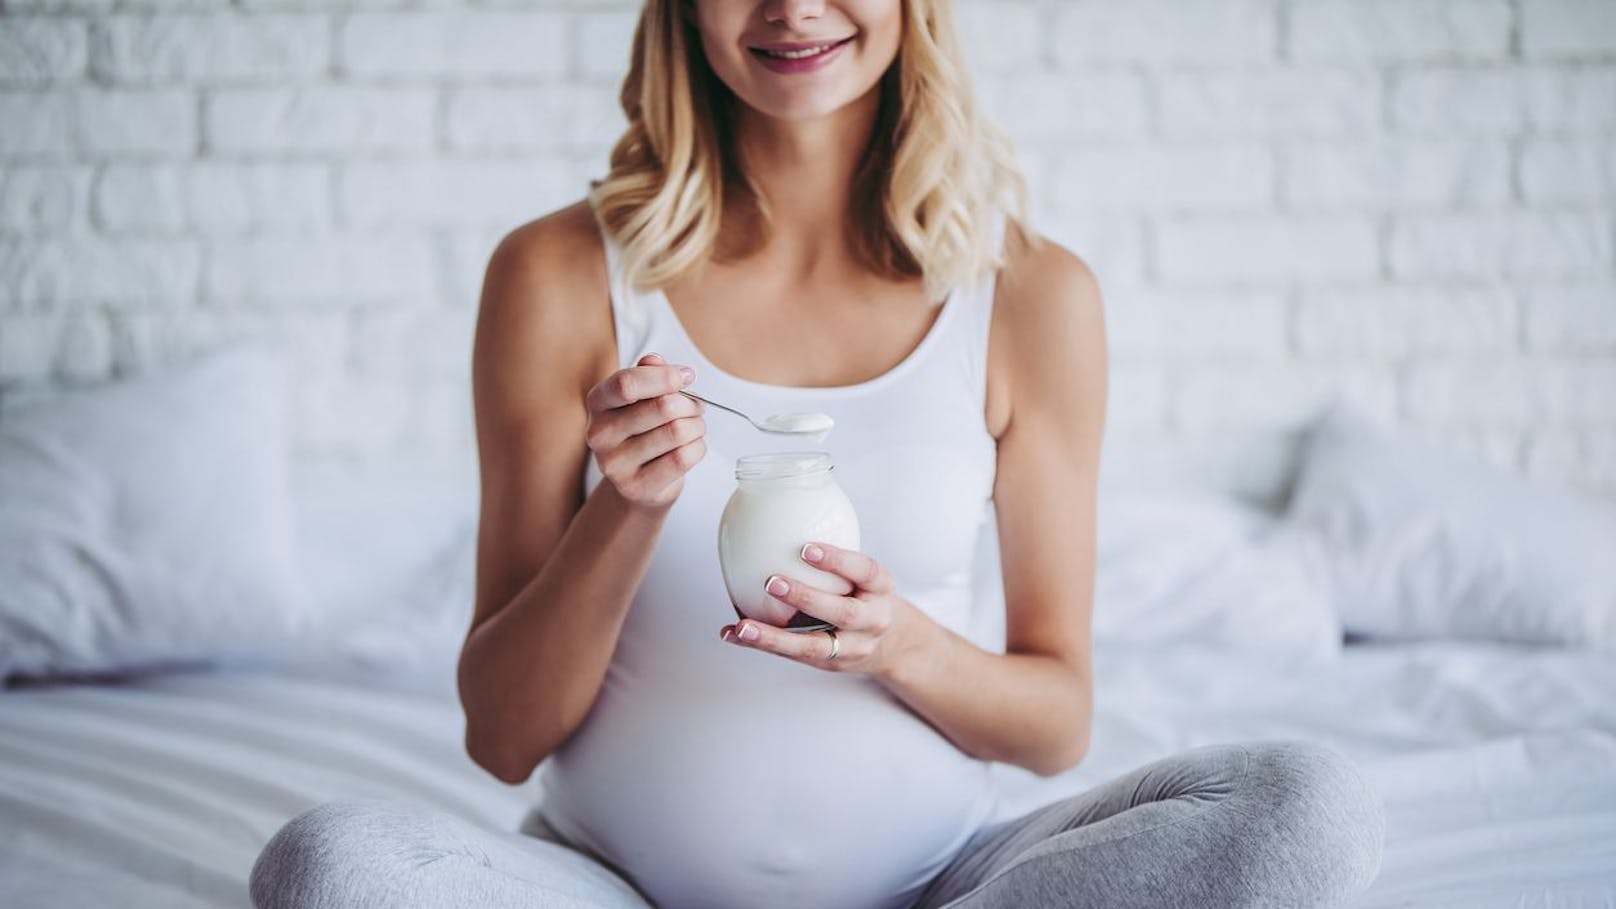 Was Schwangere essen, beeinflusst Aussehen des Kindes